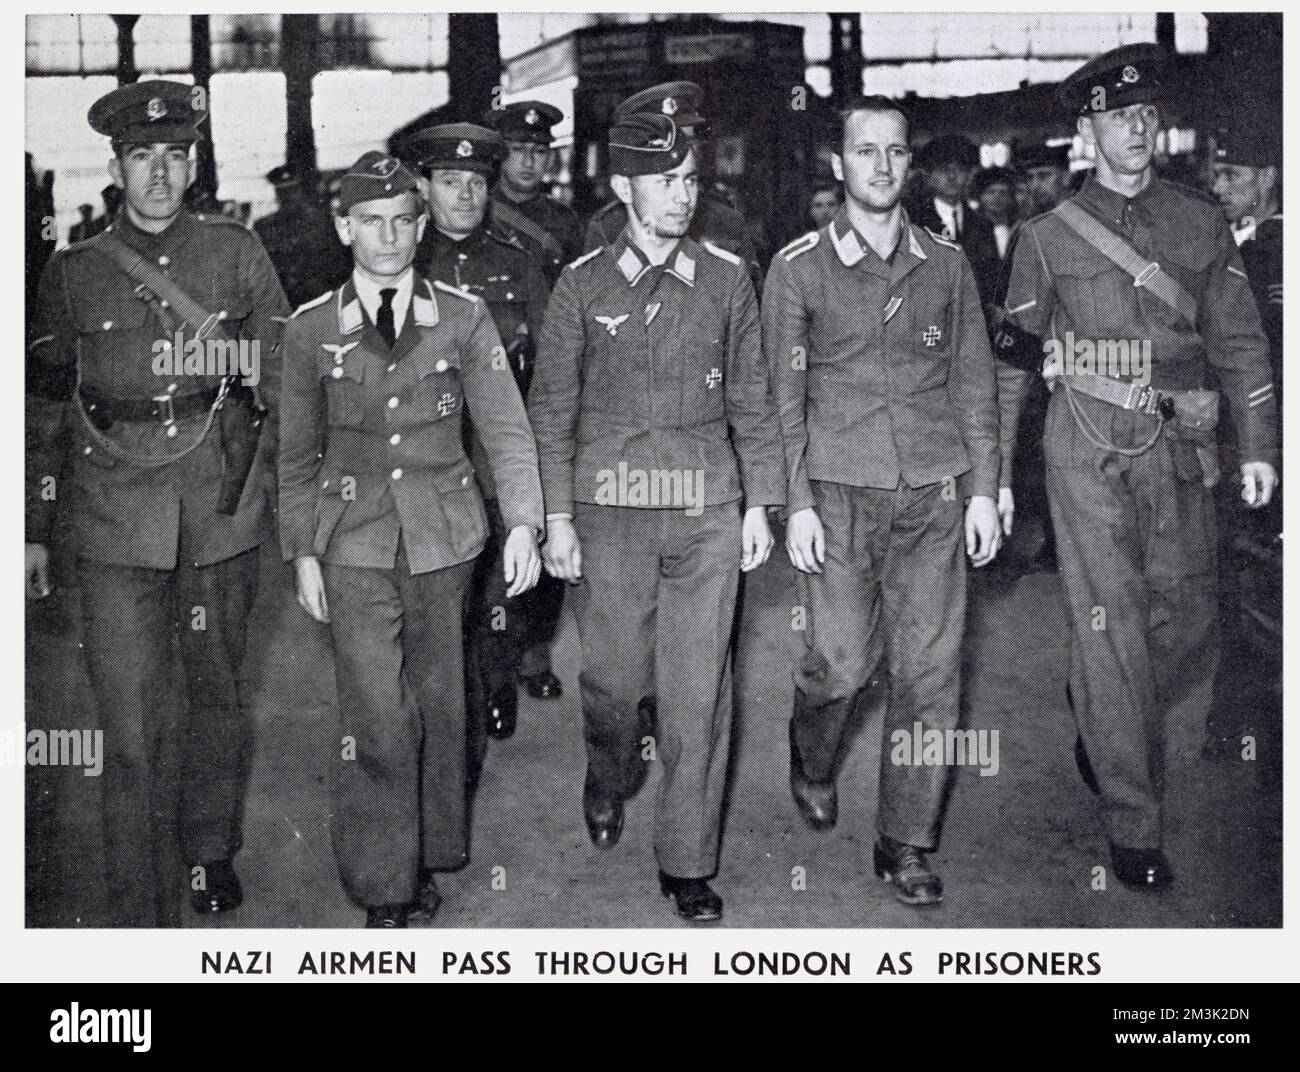 Trois membres de l'équipage (centre) allemands capturés sont en train d'être emparés par la police militaire britannique à travers une gare de Londres, en route vers un camp de prisonniers de guerre. Banque D'Images